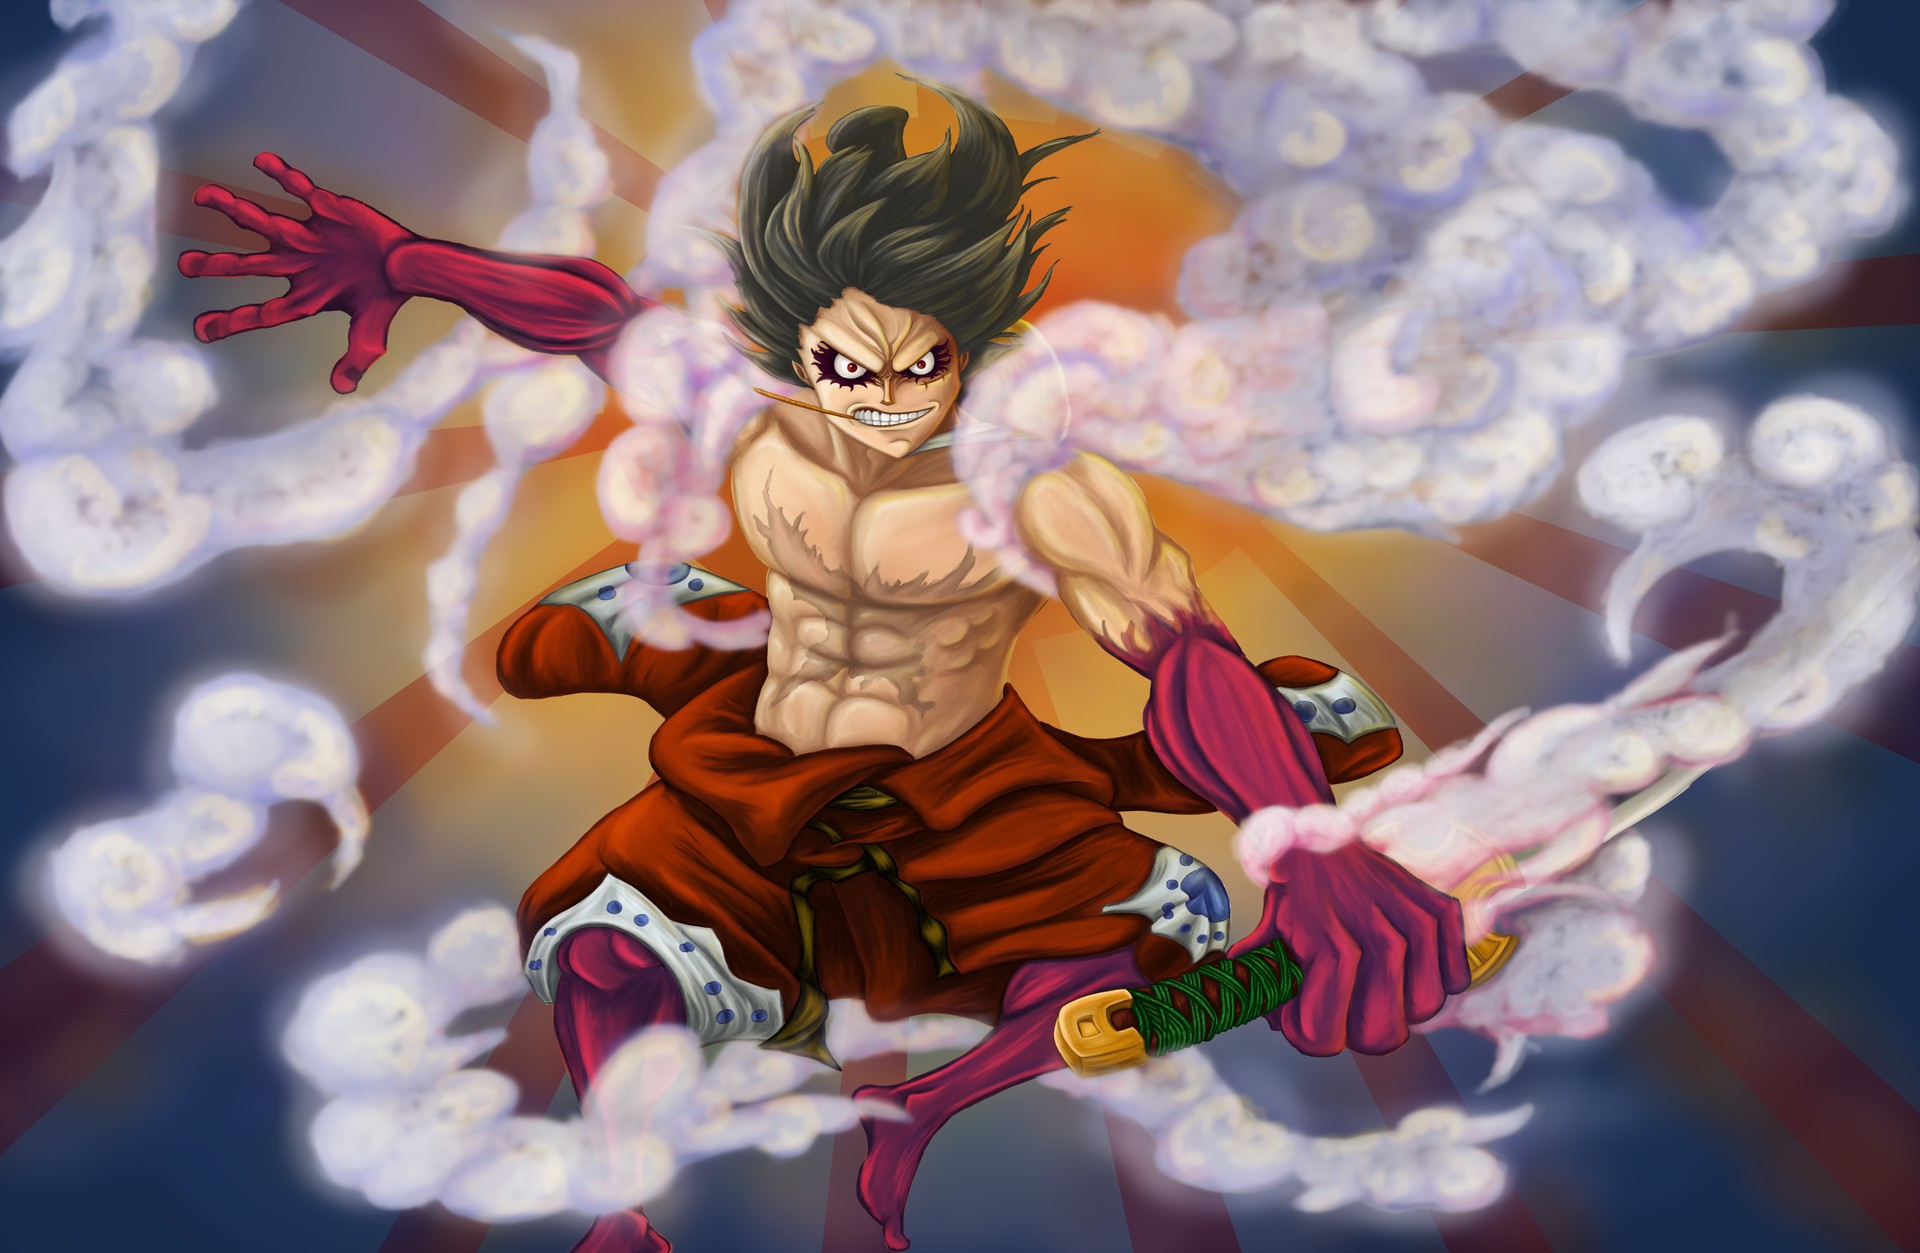 Zoan thần - Điểm nhấn trong vũ trụ One Piece - Zoan thần là một dạng trái ác quỷ độc đáo cho phép người sử dụng hóa thân thành một sinh vật hoàn toàn khác. Đi kèm với sức mạnh và khả năng siêu phàm, Zoan thần chắc chắn sẽ đem lại cho bạn nhiều trải nghiệm thú vị.